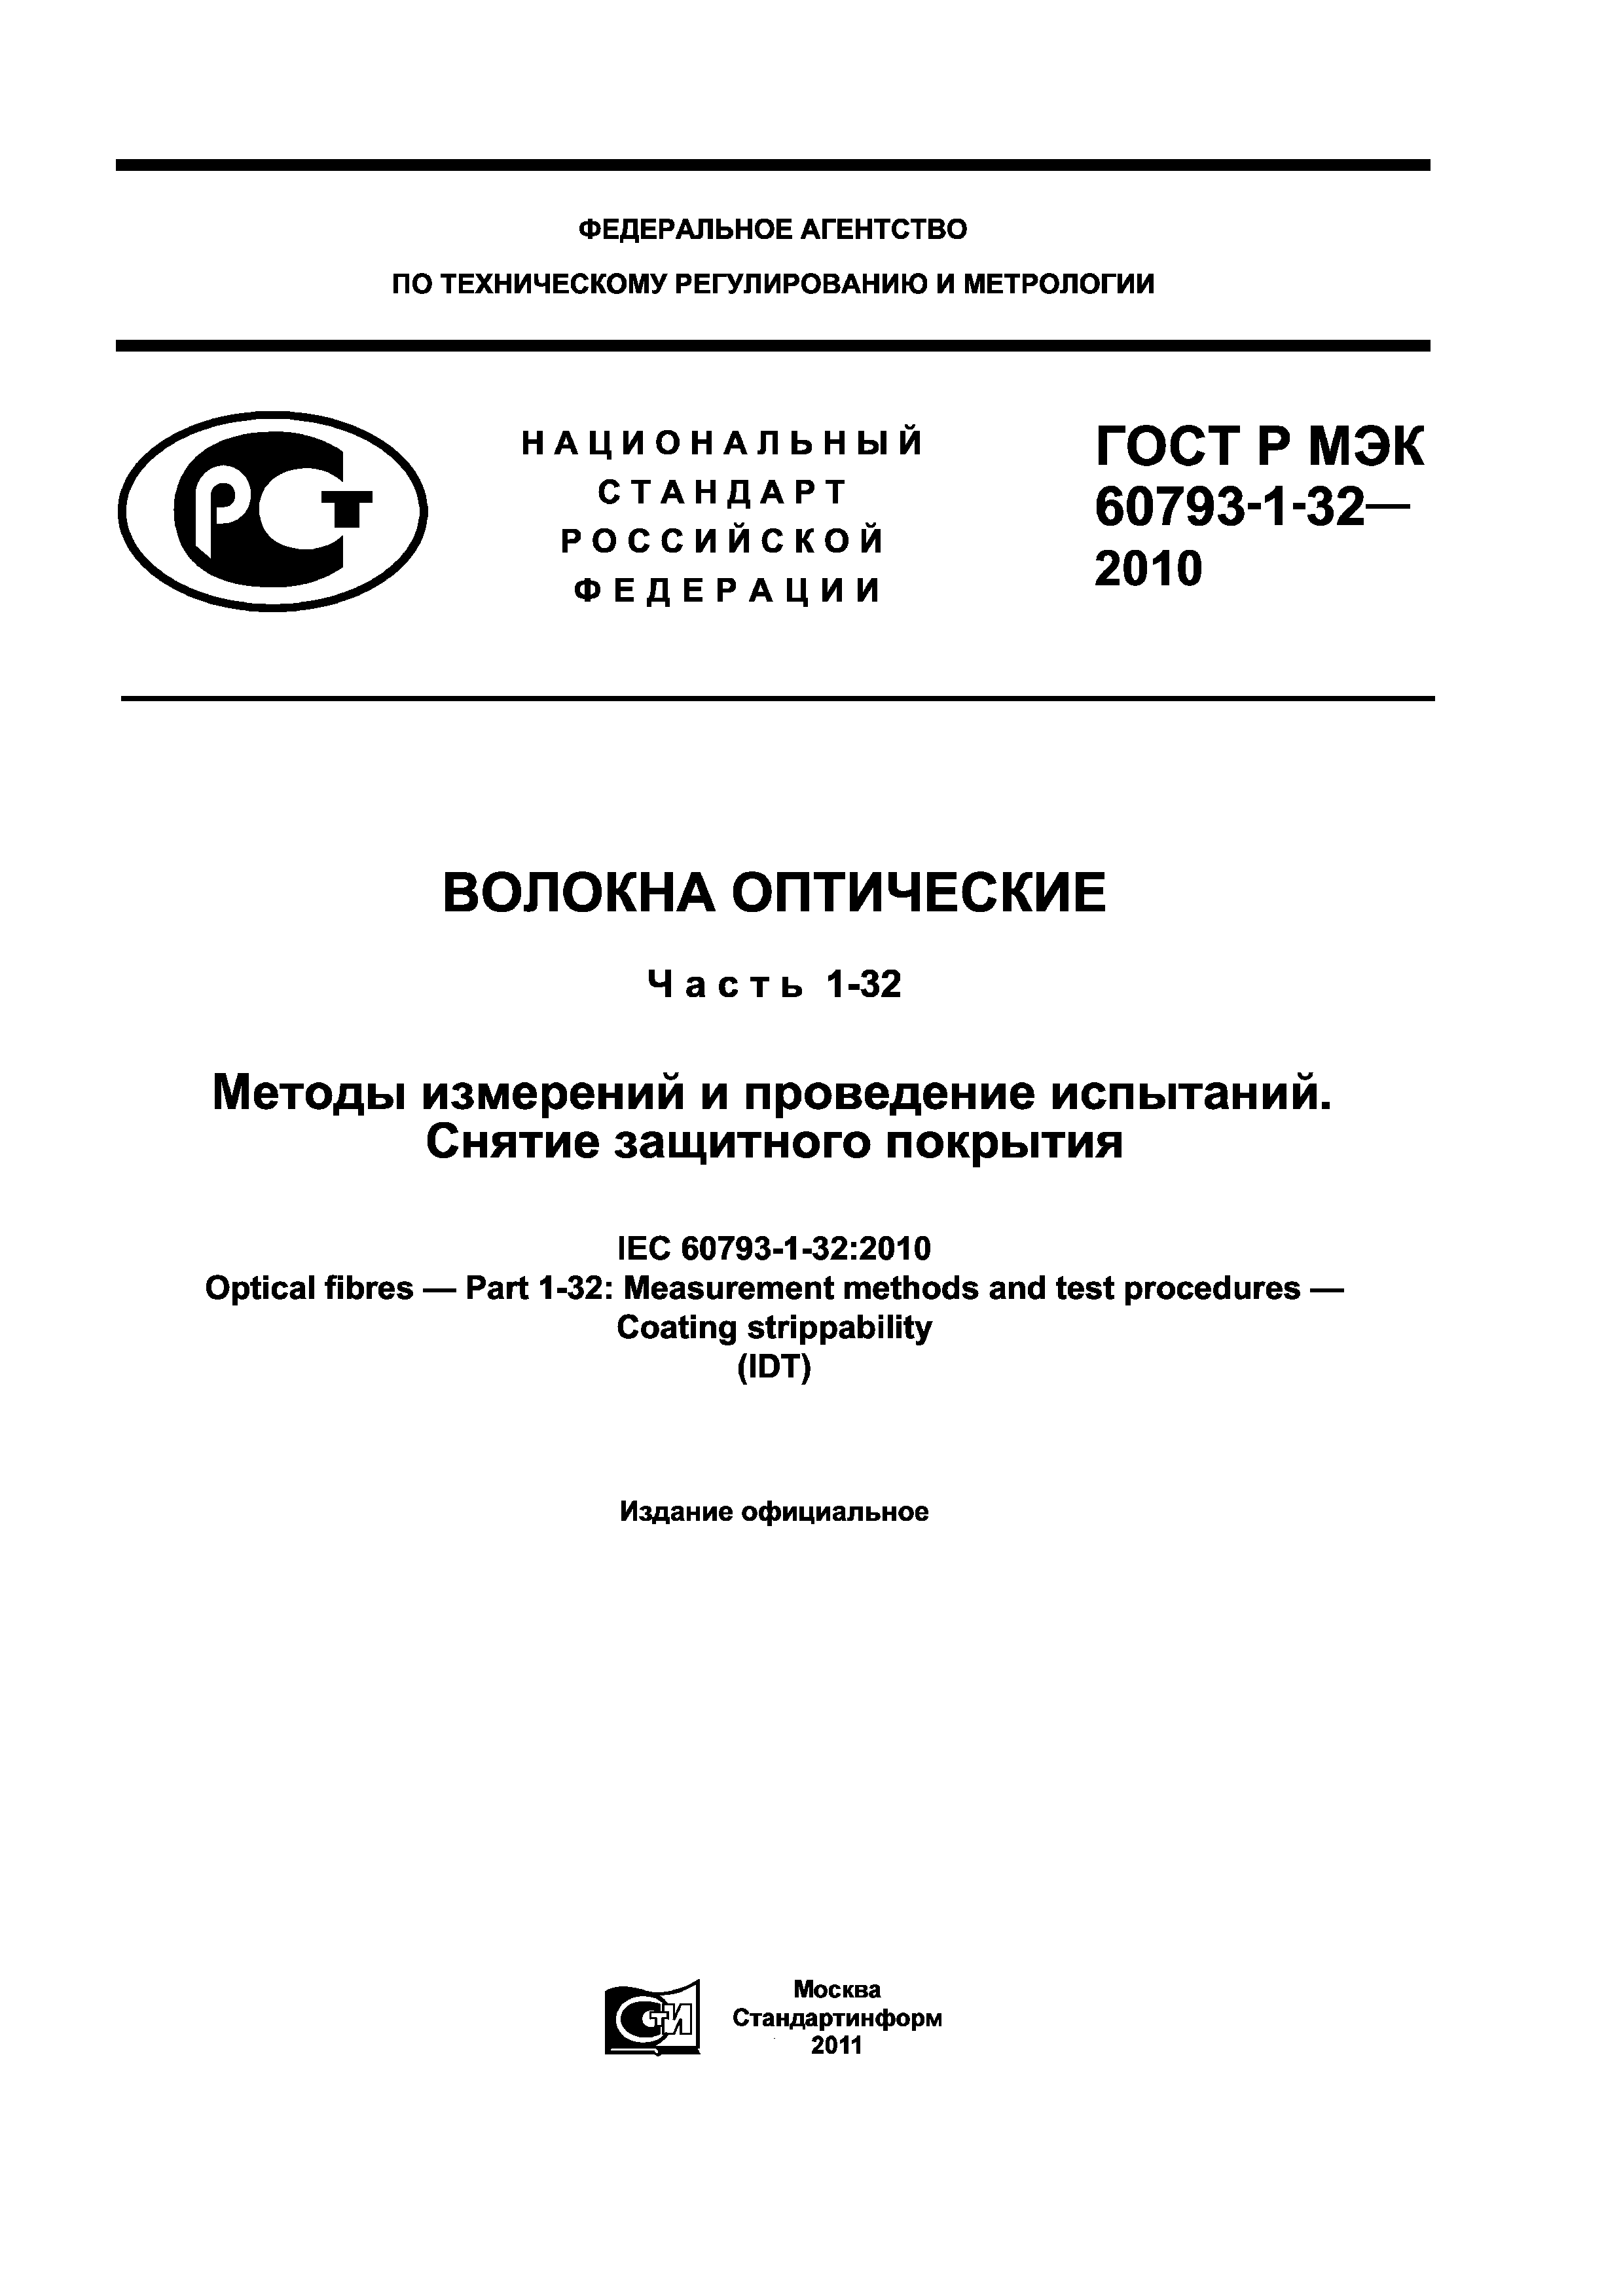 ГОСТ Р МЭК 60793-1-32-2010